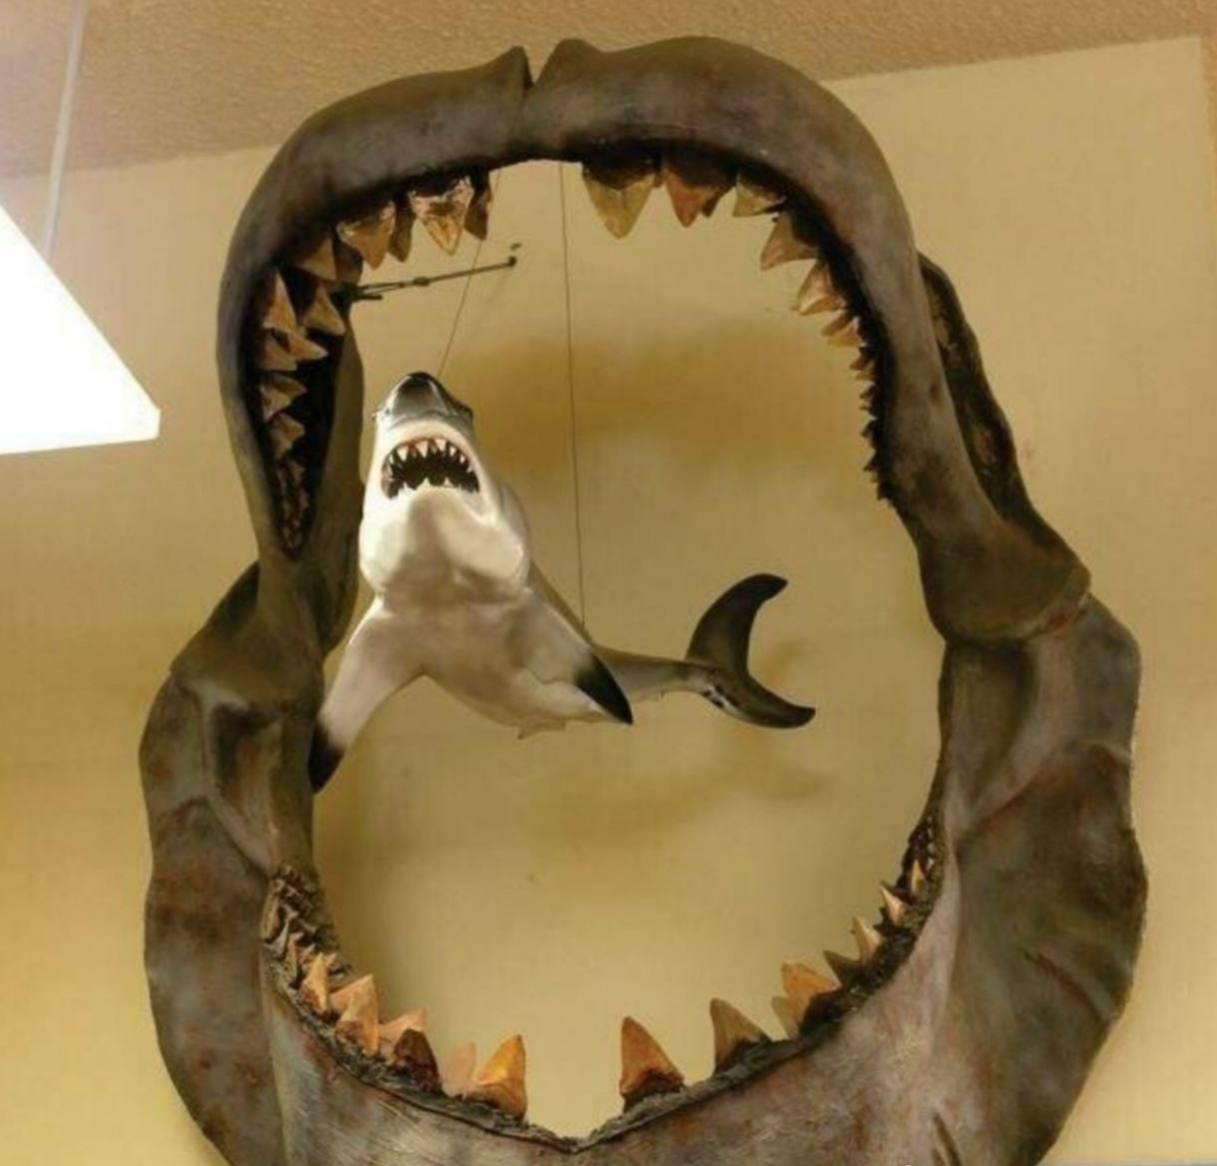 Челюсть древнего мегалодона по сравнению с 3-метровой большой белой акулой.